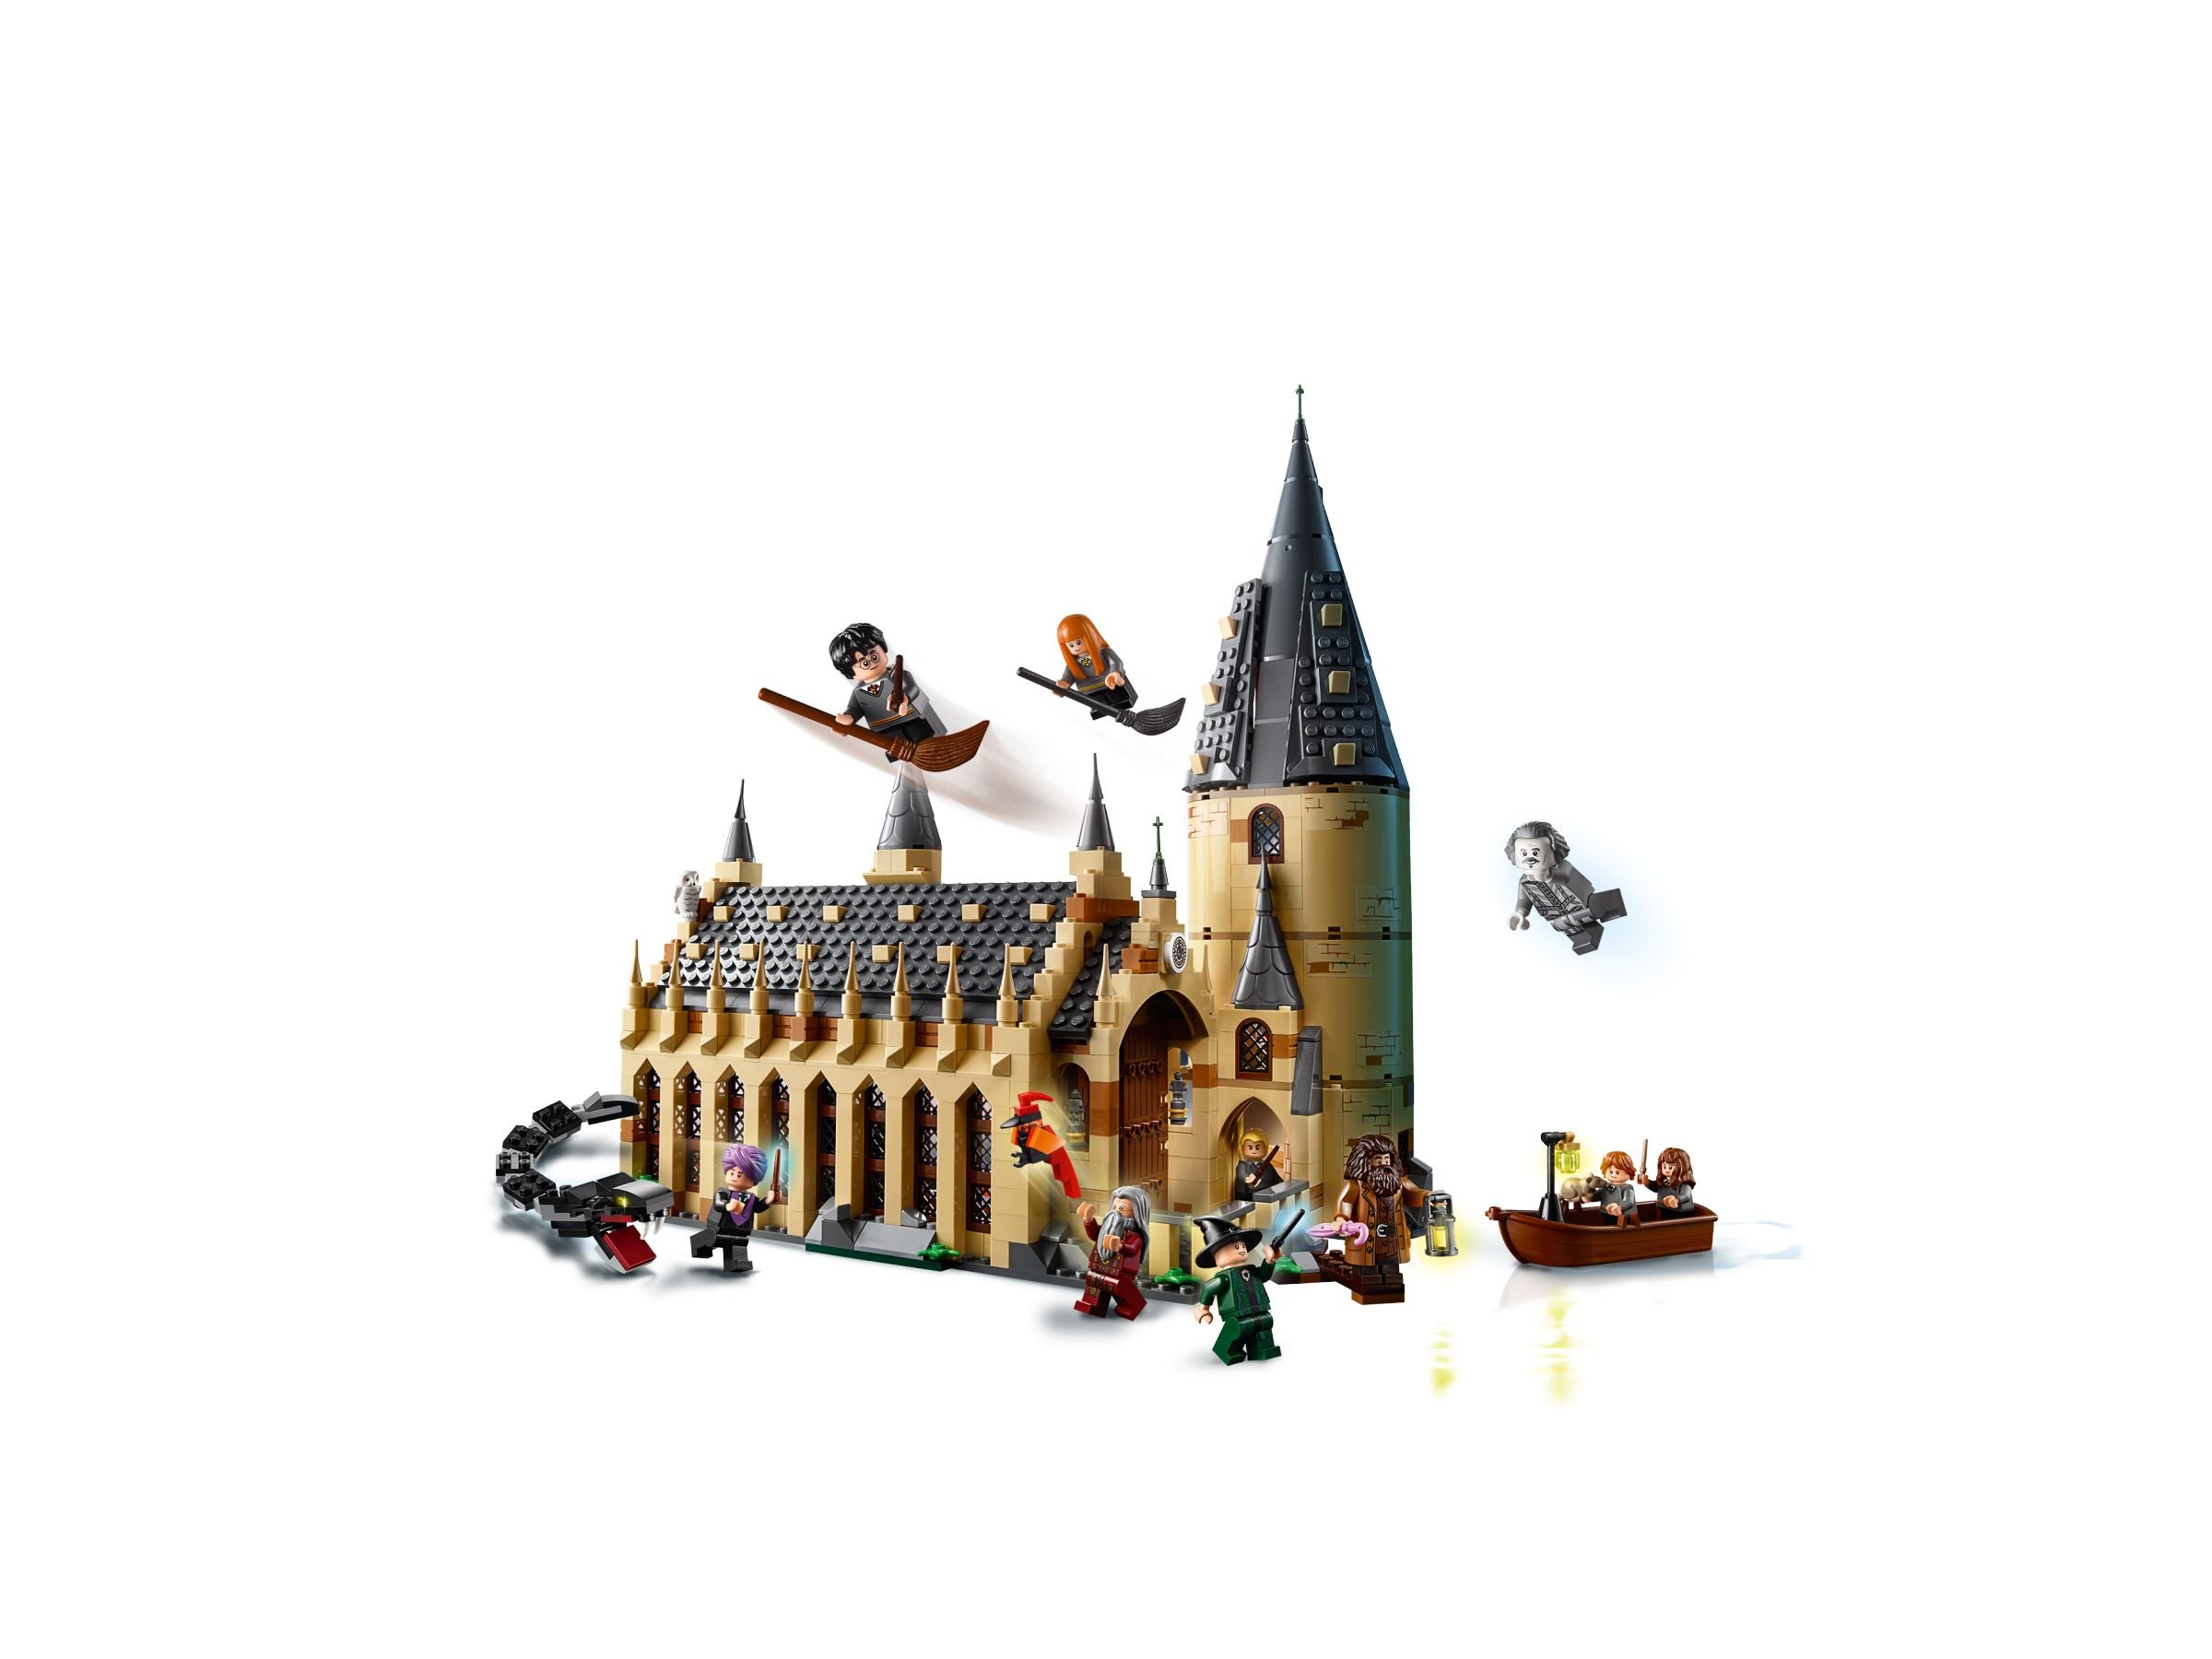 LEGO Harry Potter 75954 Die große Halle von Hogwarts LEGO_75954_alt2.jpg